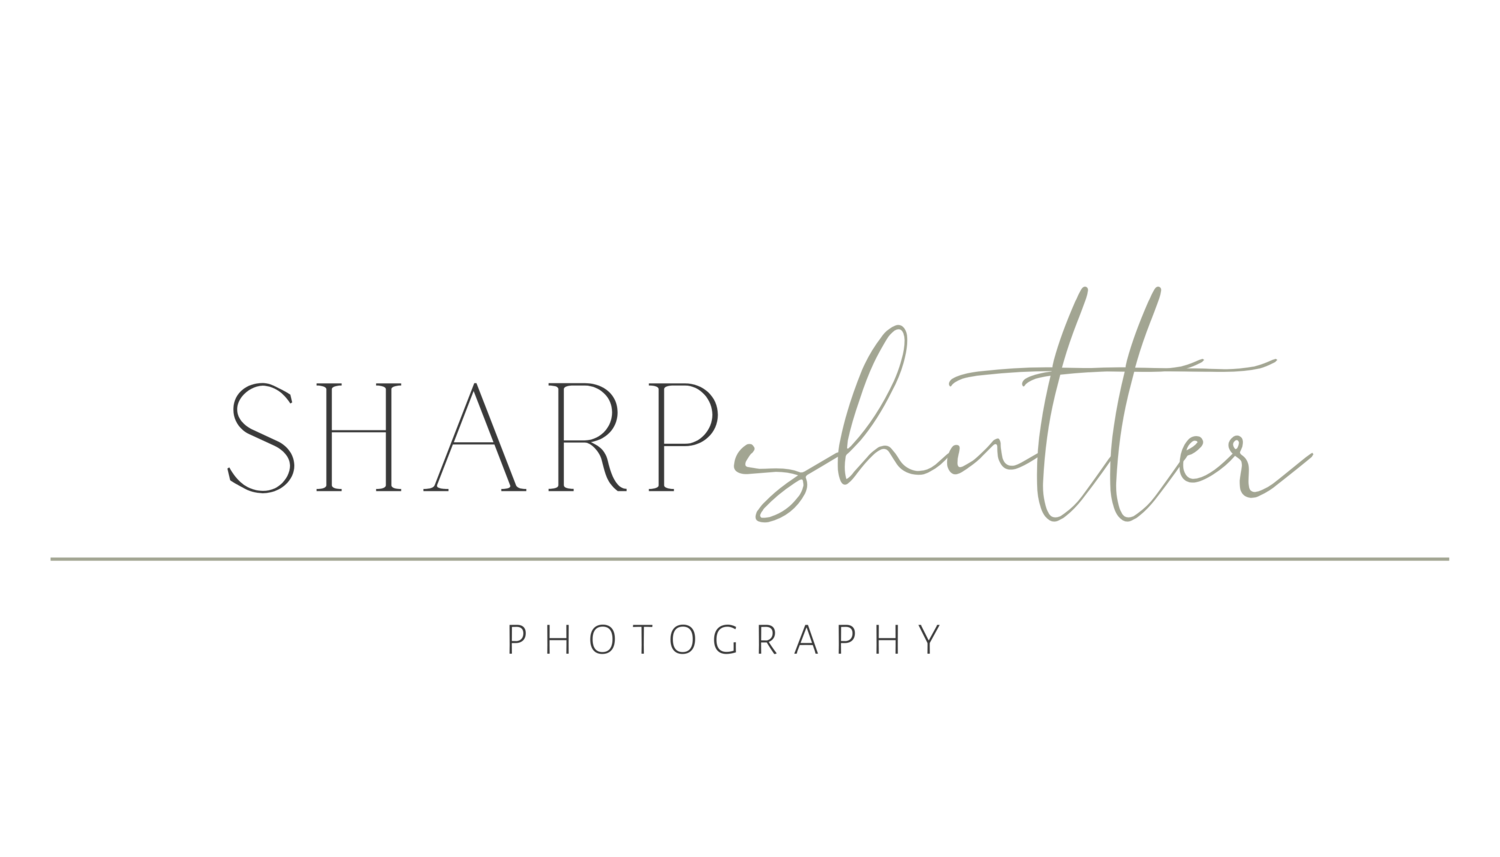 SHARP SHUTTER PHOTOGRAPHY